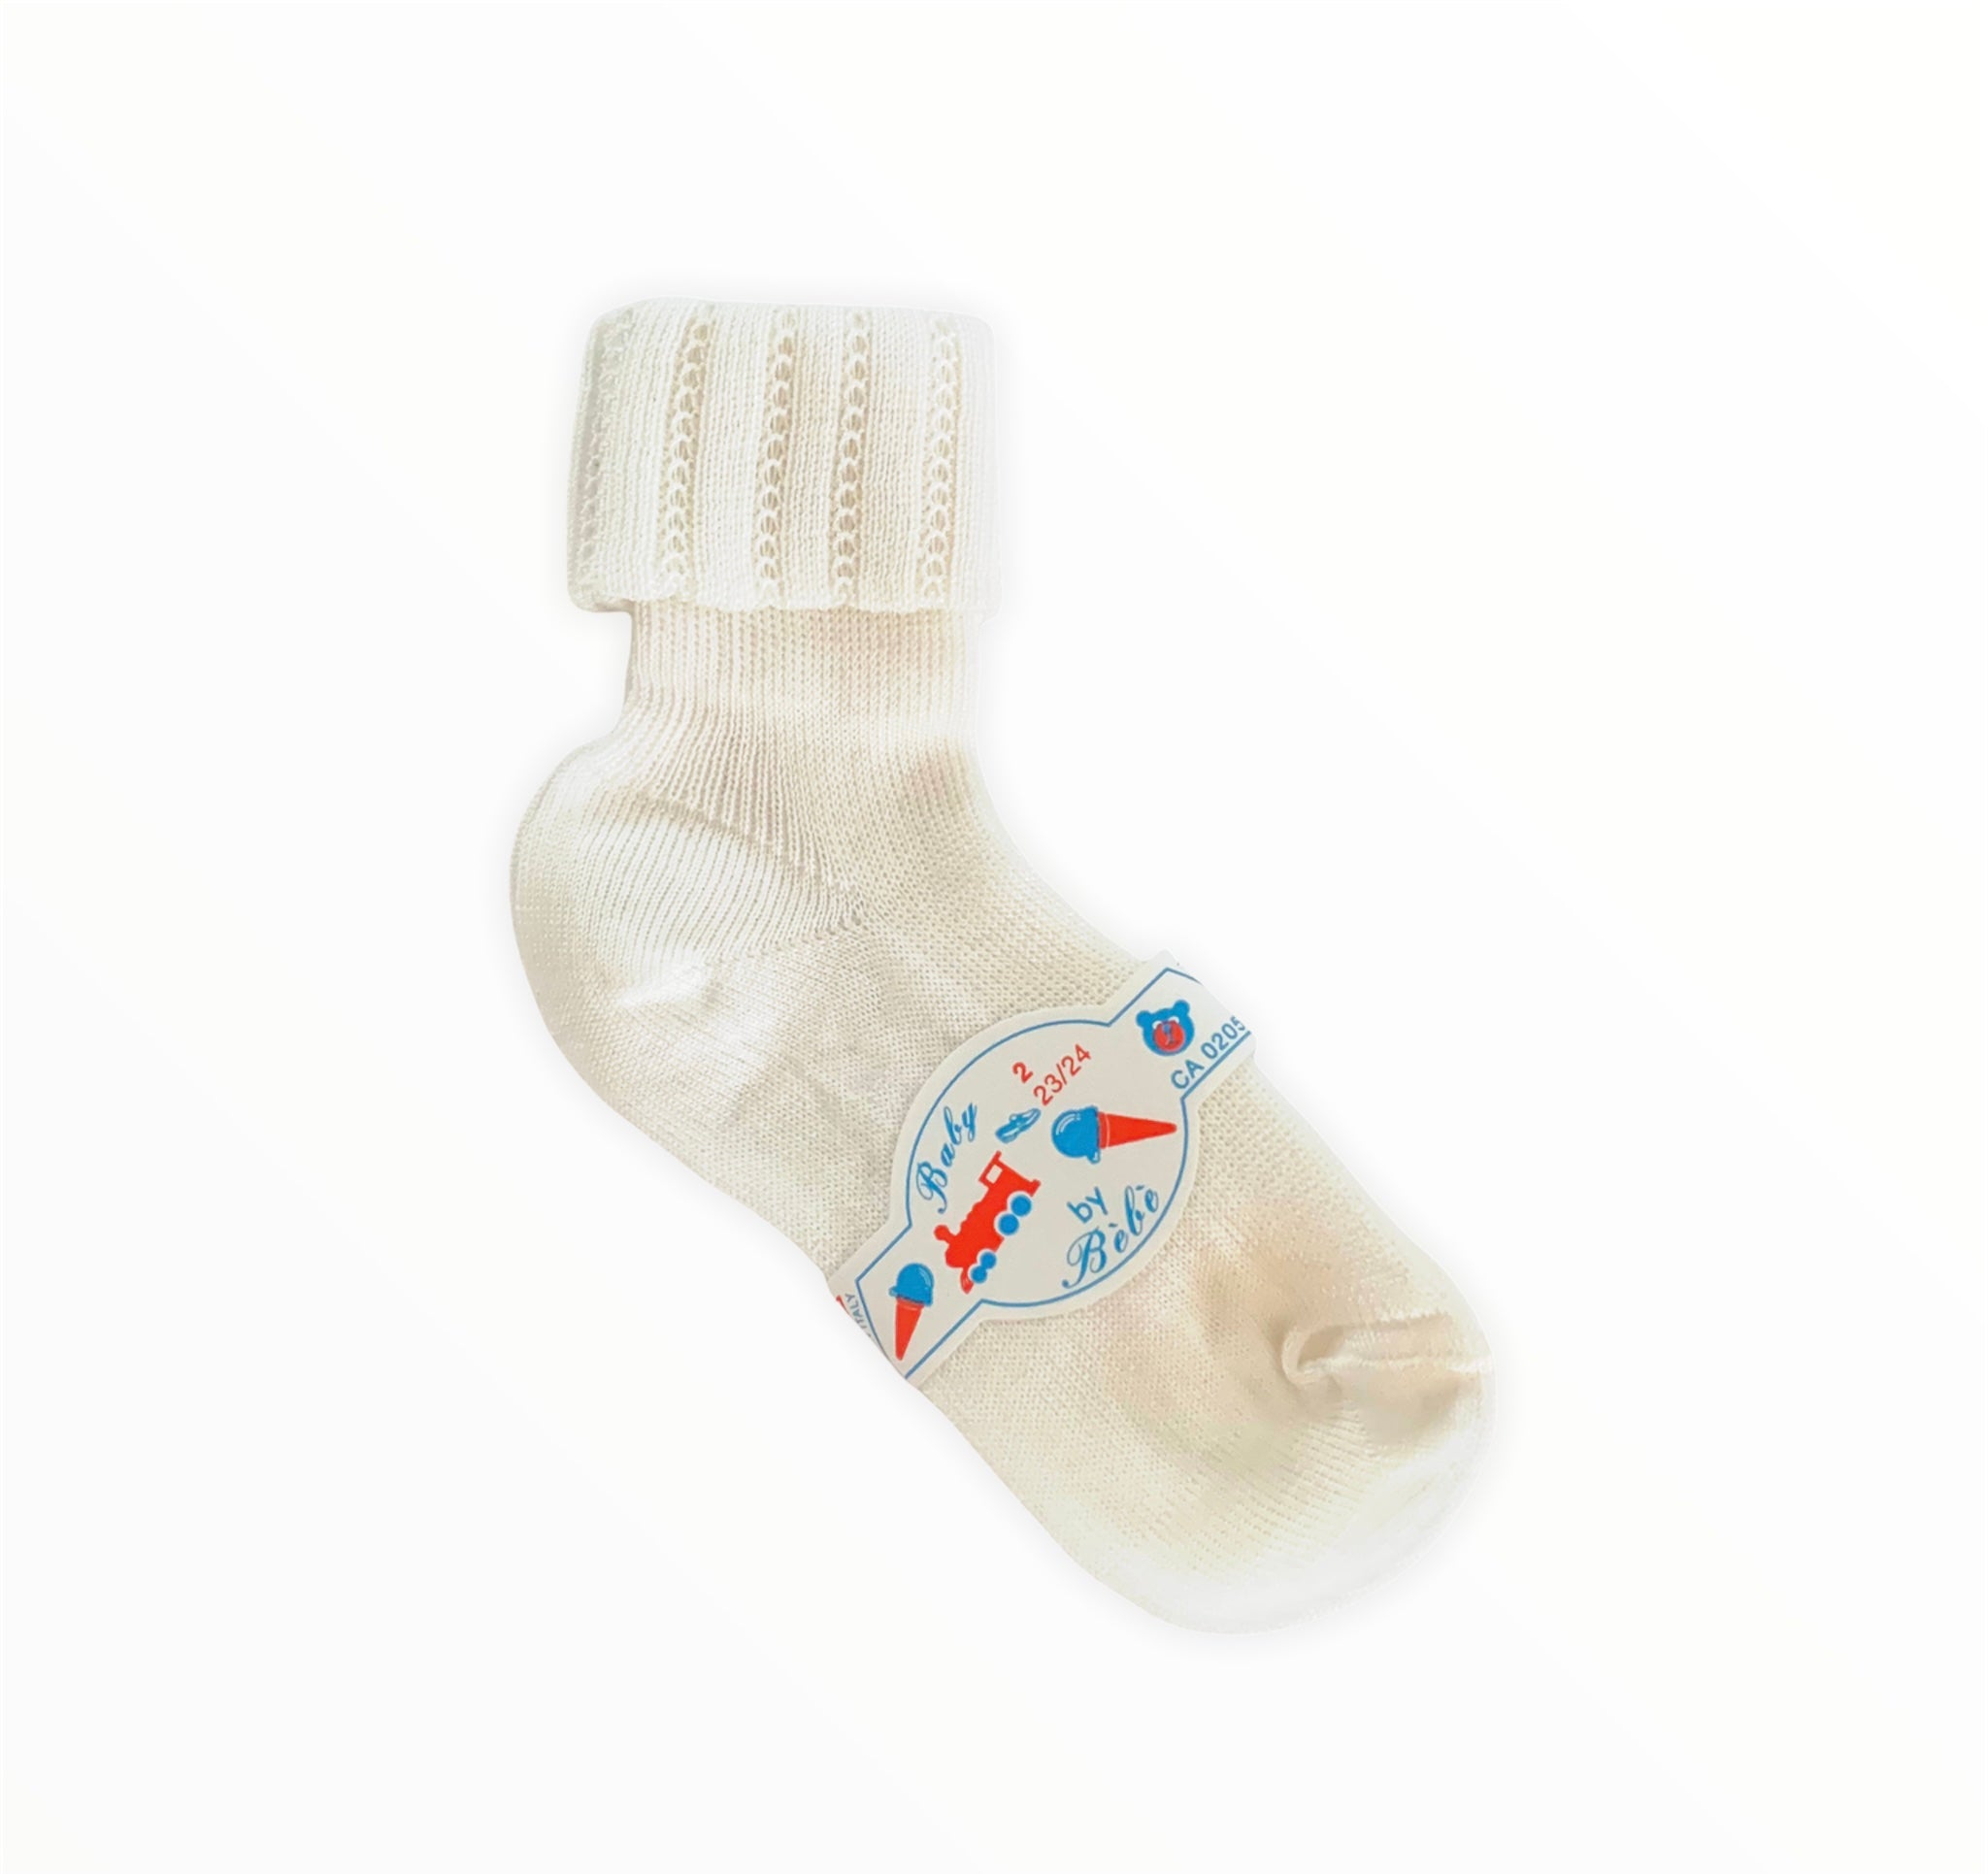 Boys Ivory Cotton Socks - Size 2 (EU.23/24)